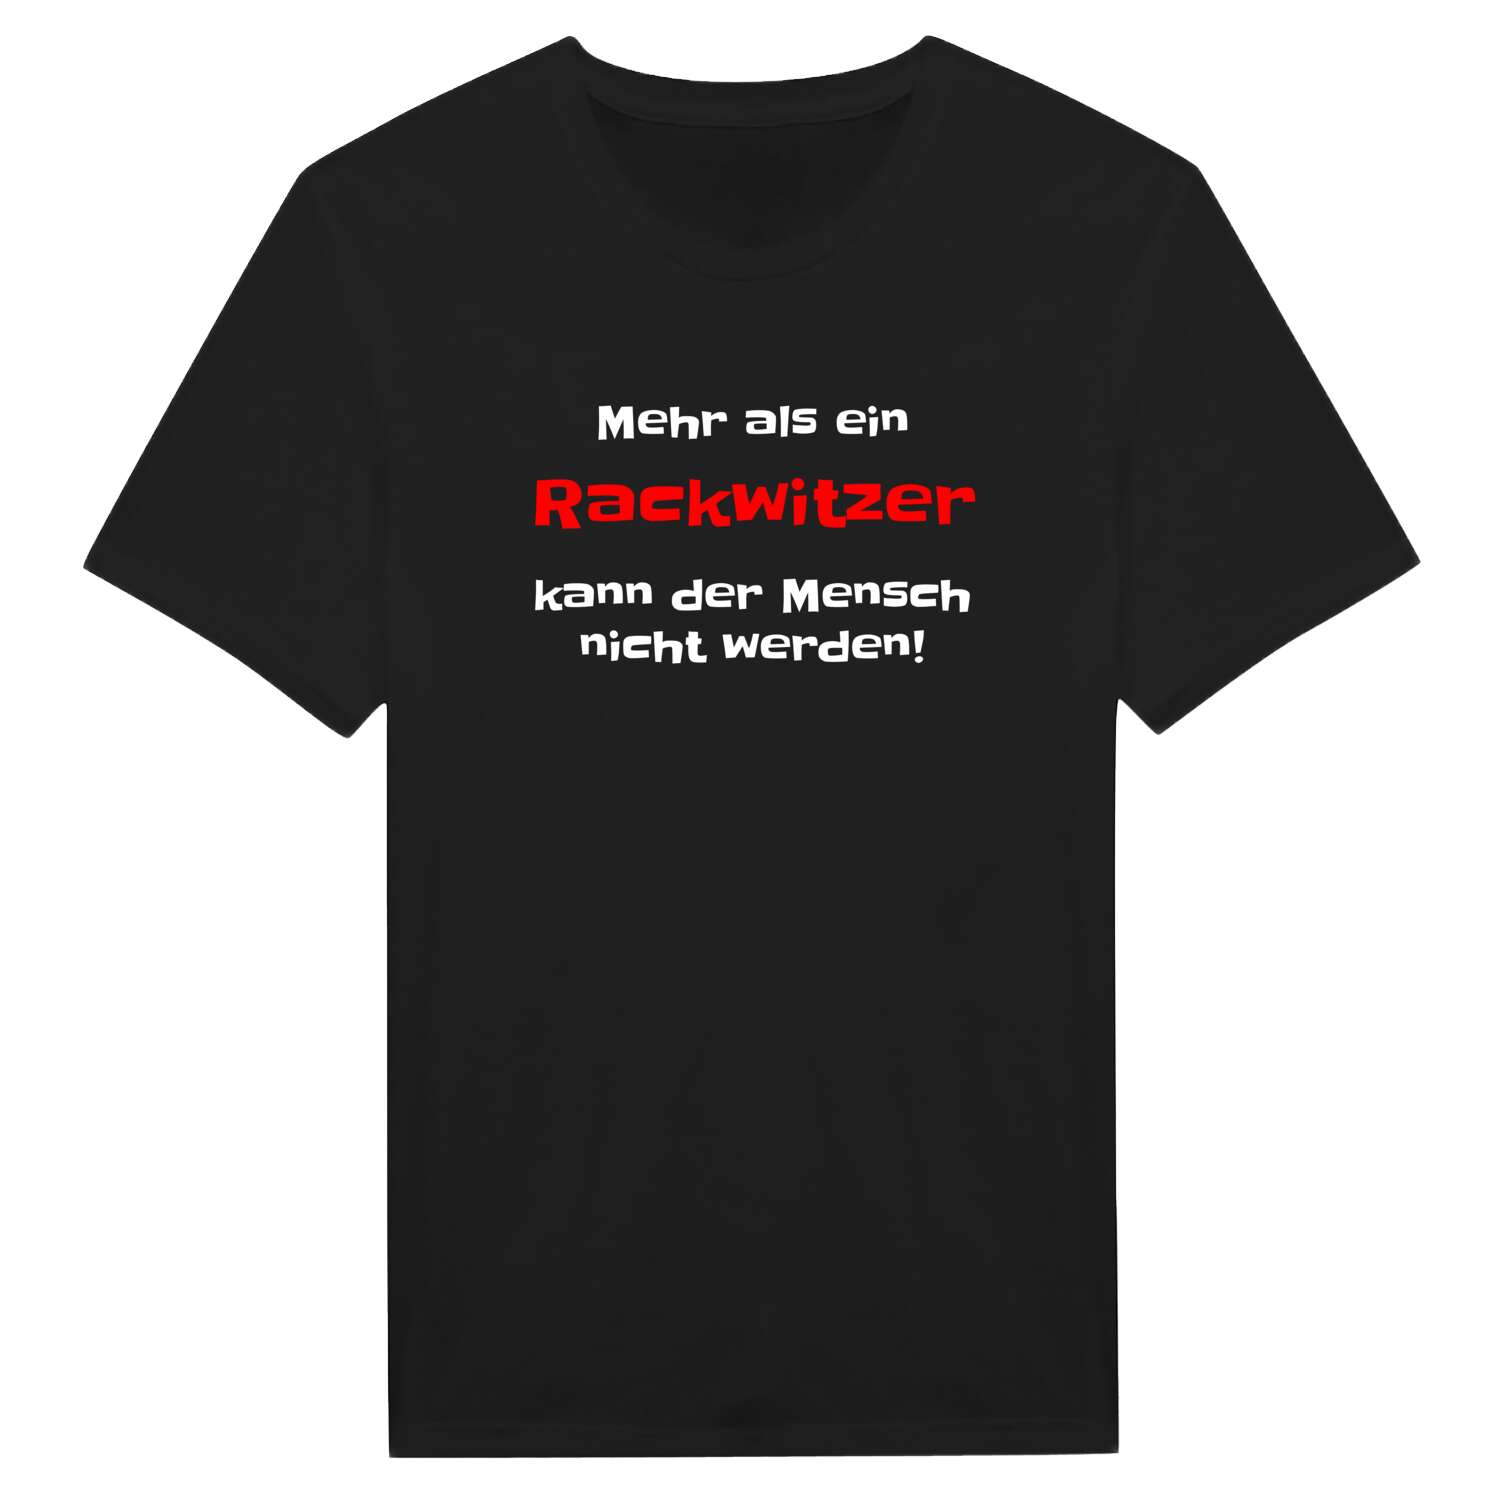 Rackwitz T-Shirt »Mehr als ein«